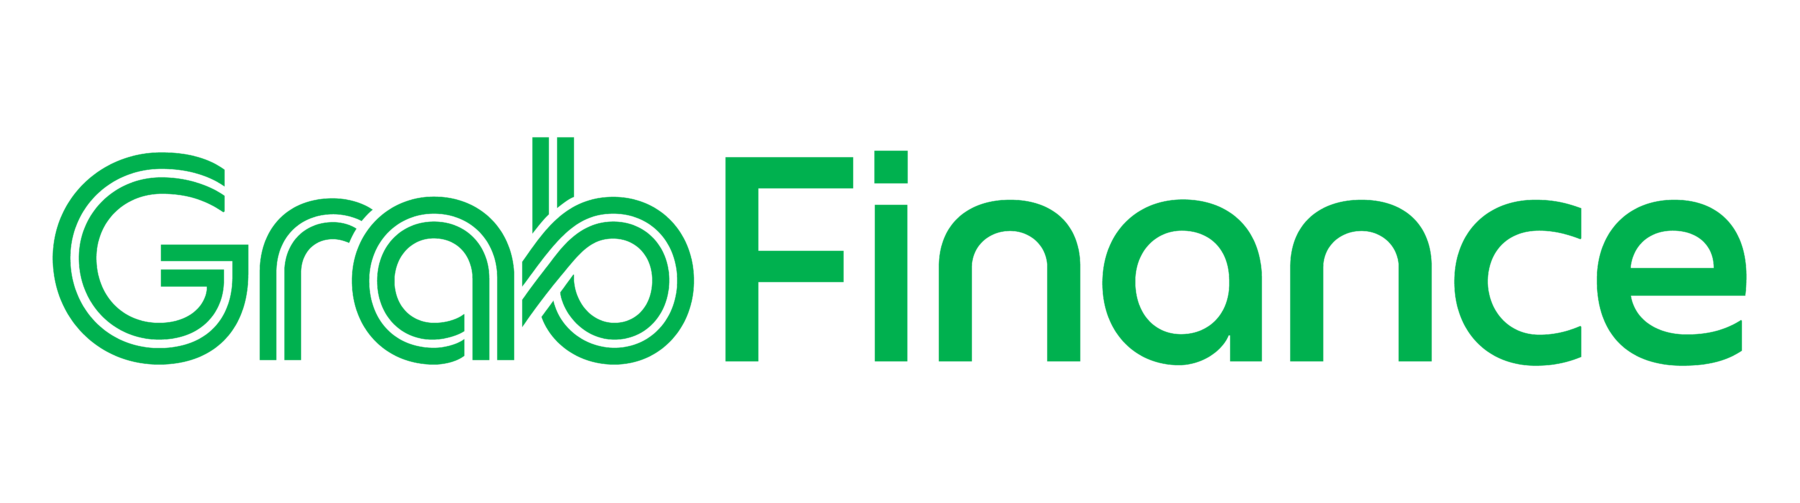 GrabFinance_Final_Main_Logo_2019_RGB_green_horizontal-01.png